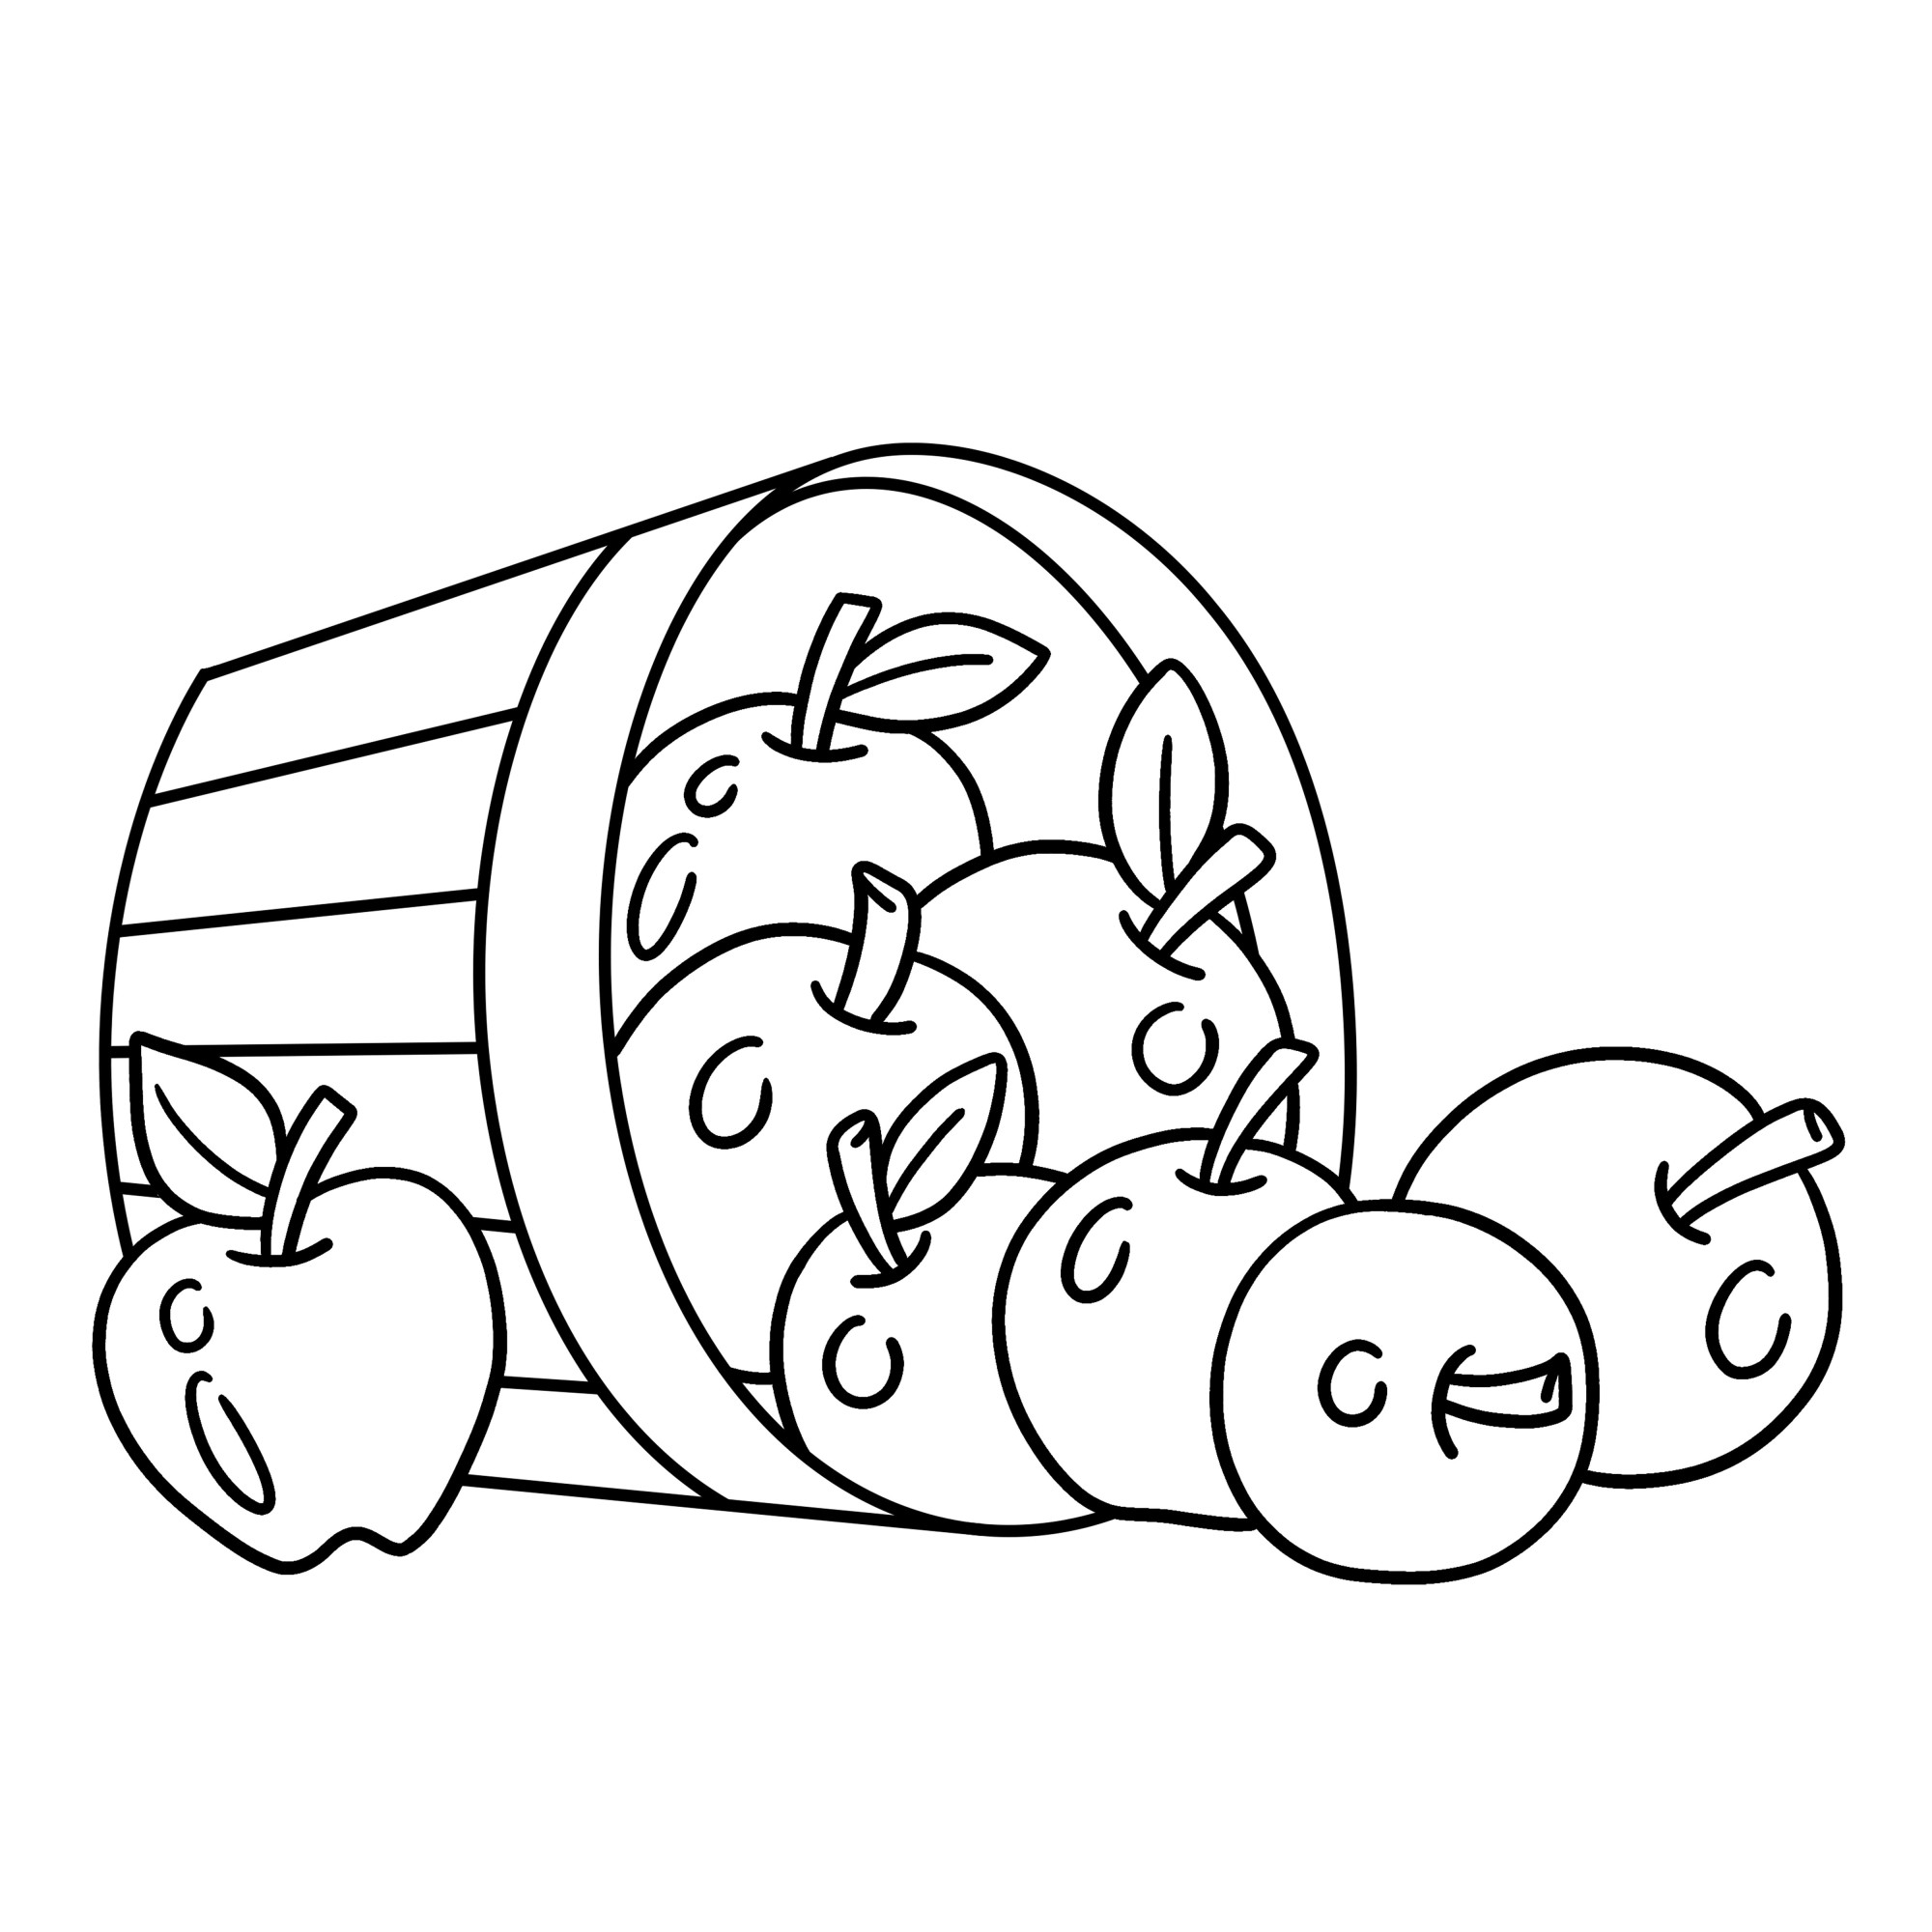 Раскраска для детей: перевернутое лукошко с яблоками